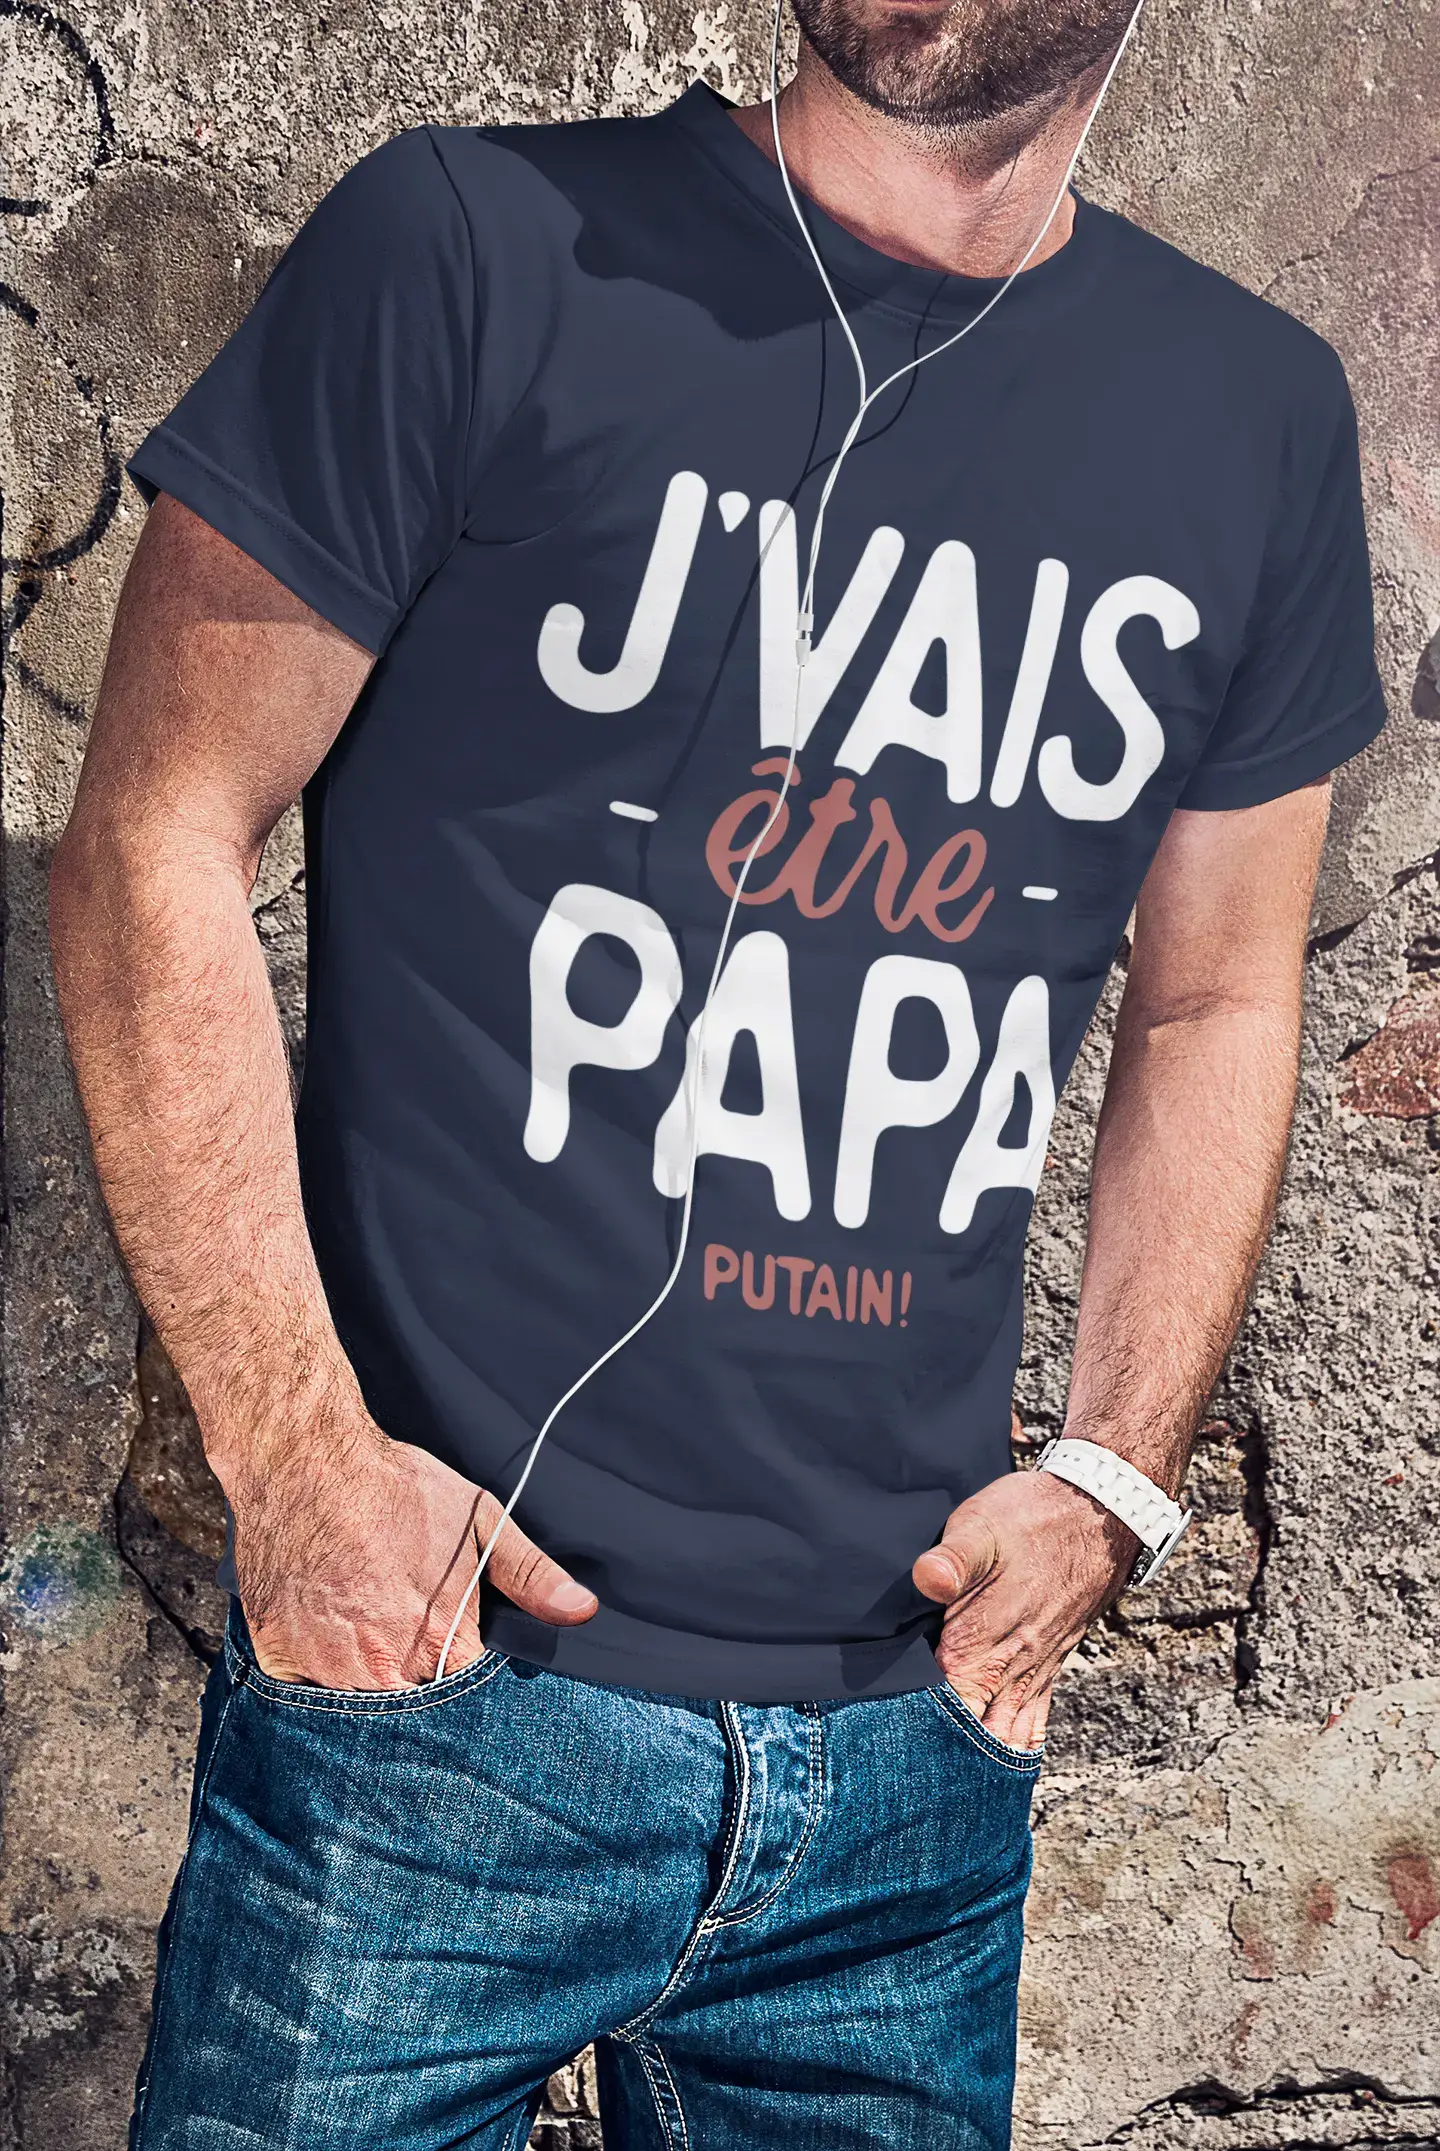 Ultrabasic - Graphique Homme J'vais Être Papa Putain T-Shirt Marine Lettre